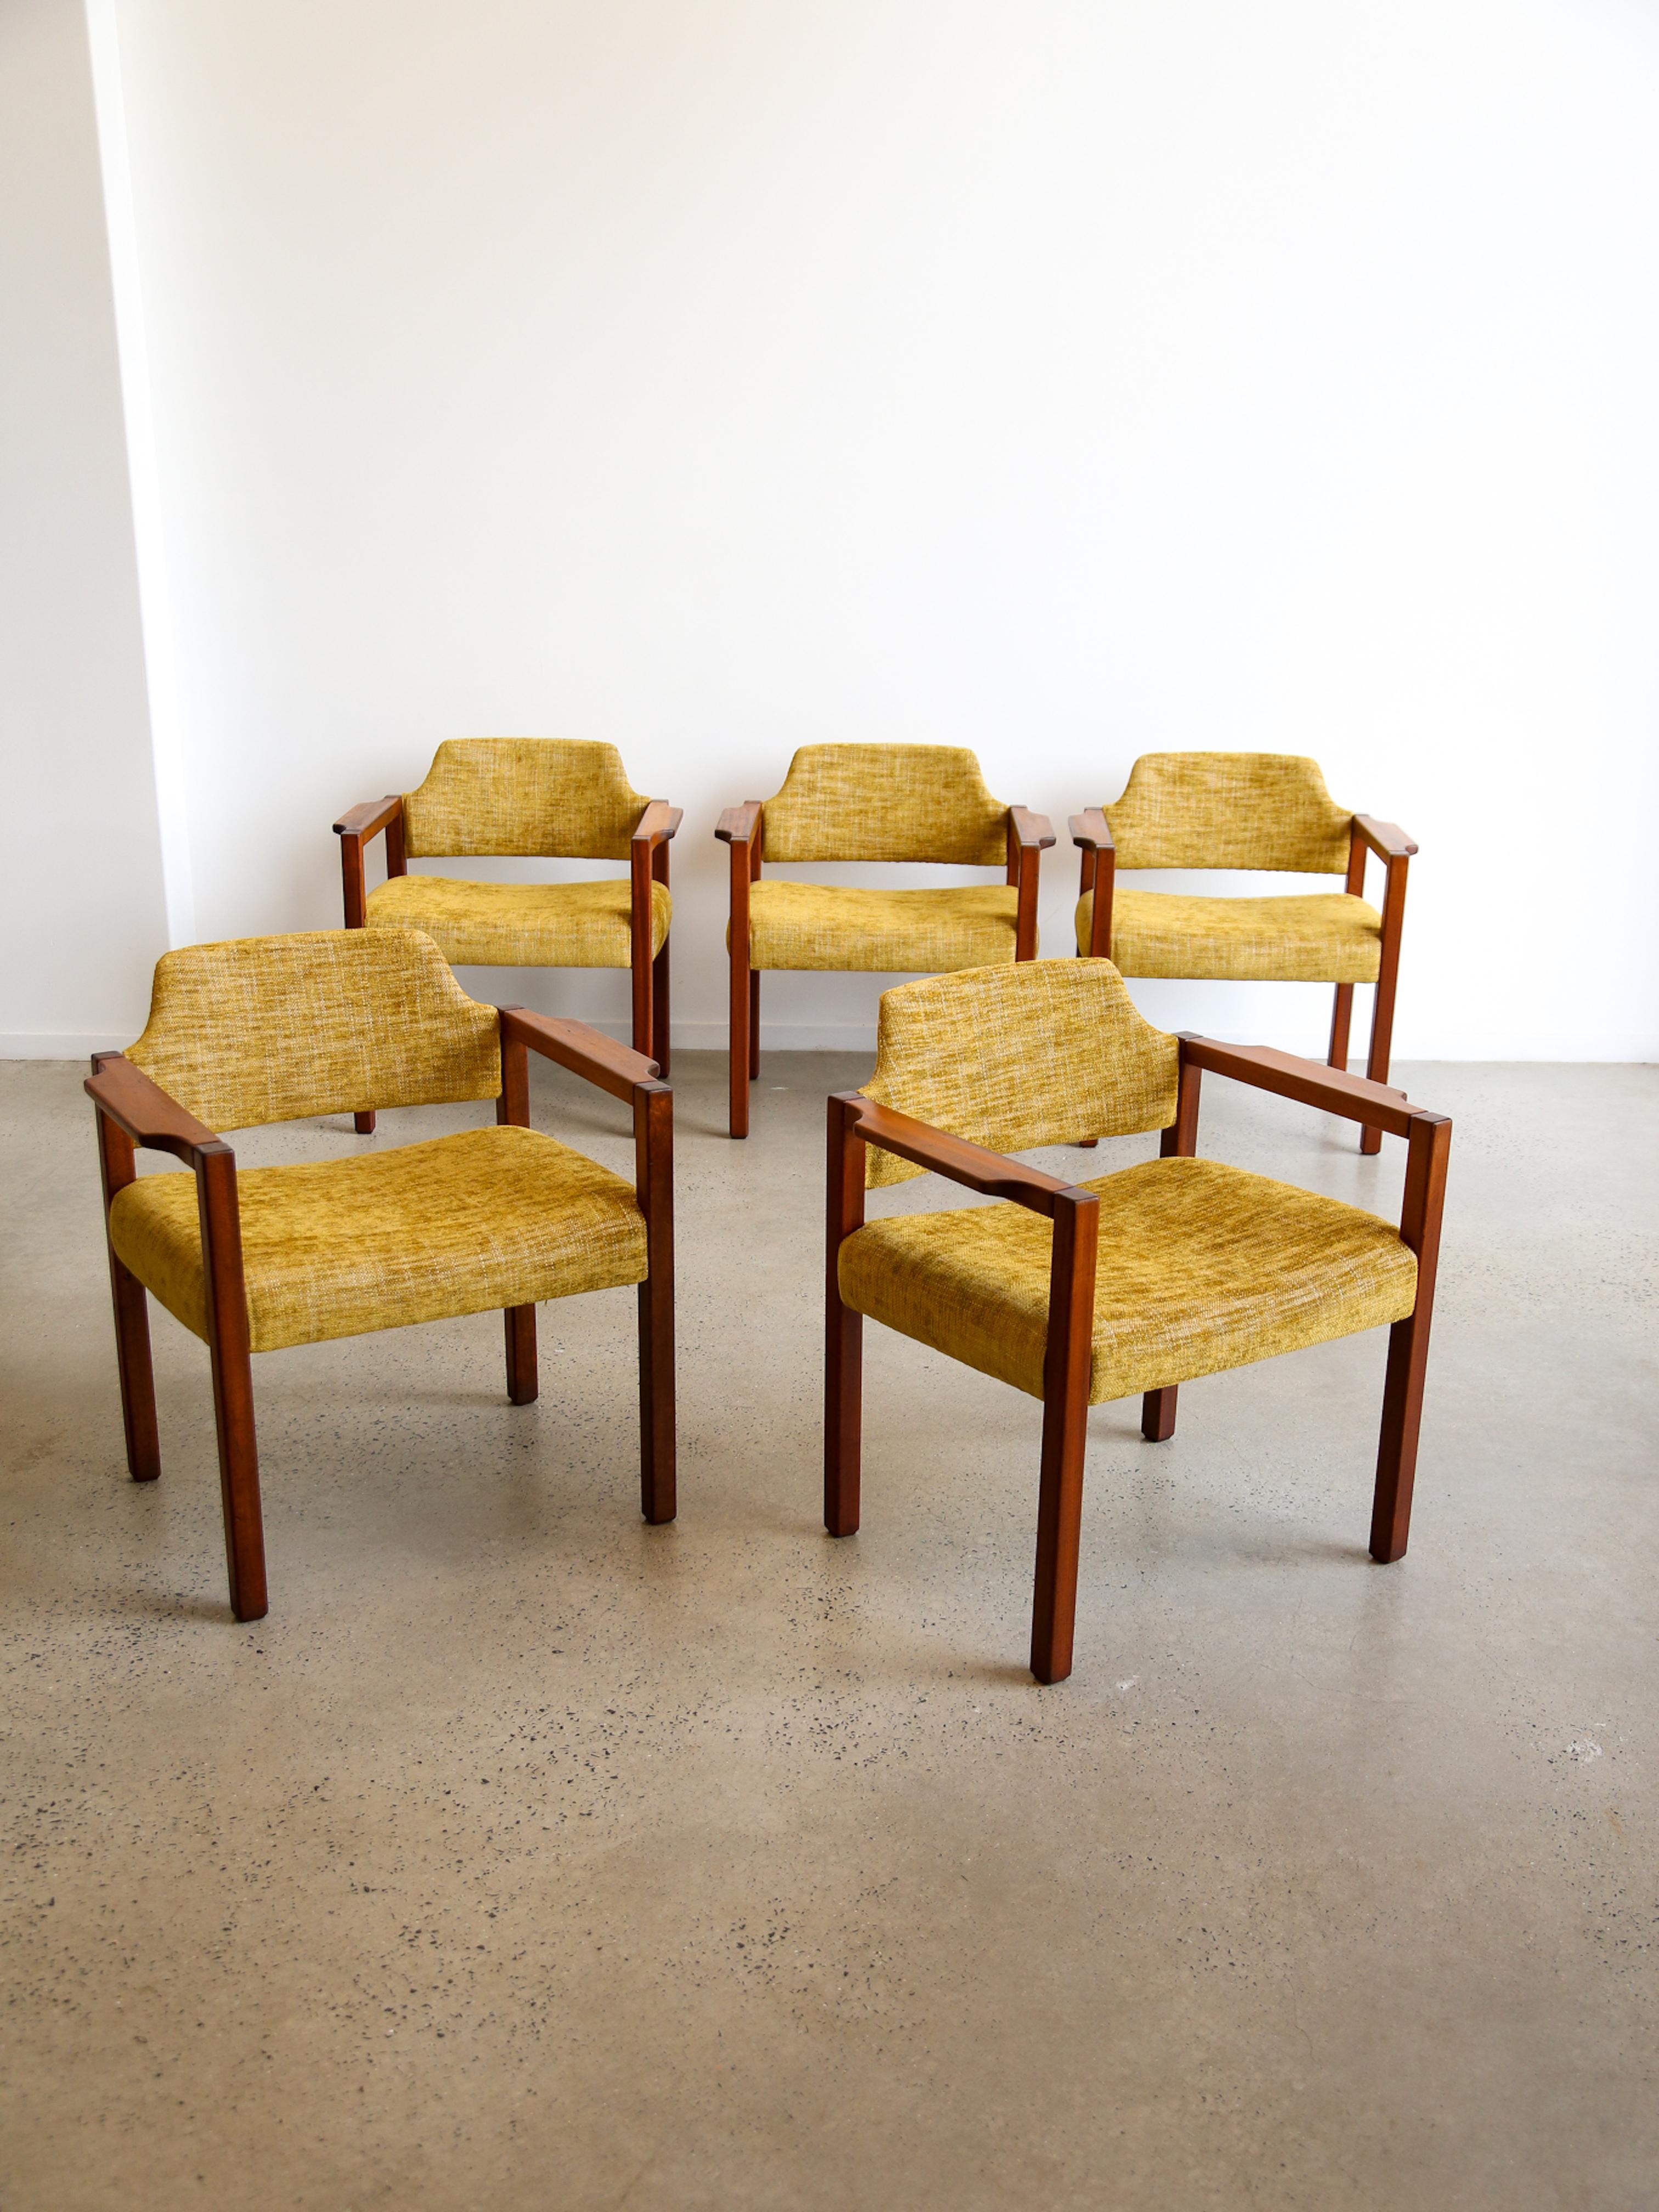 Ensemble de six fauteuils en hêtre et tissu par Umberto Brandigi pour Poltronova. 

Poltronova est une société de design italienne connue pour ses contributions au monde du mobilier et de la décoration d'intérieur modernes et contemporains. Fondée